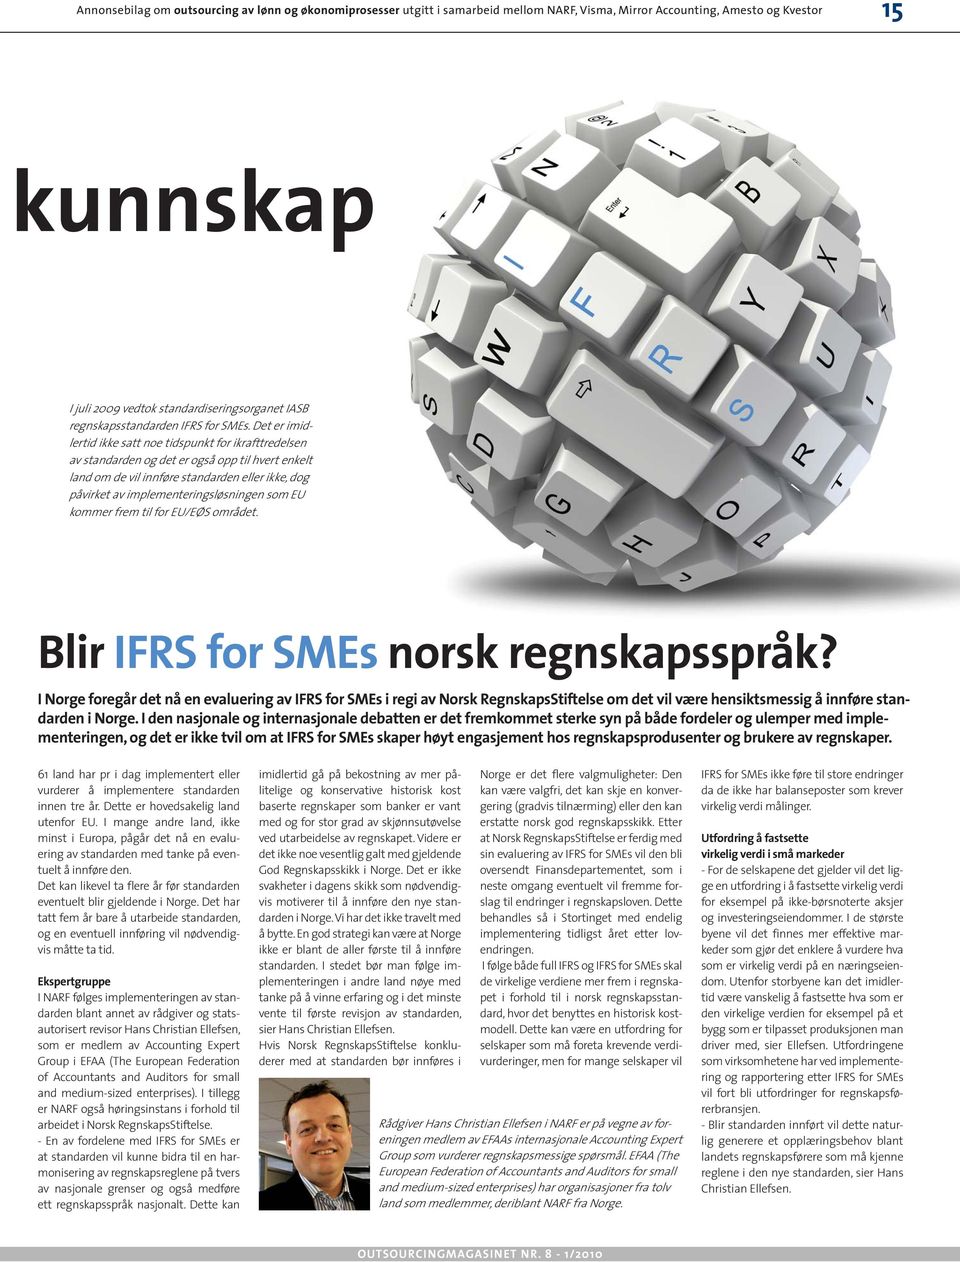 som EU kommer frem til for EU/EØS området. Blir IFRS for SMEs norsk regnskapsspråk?